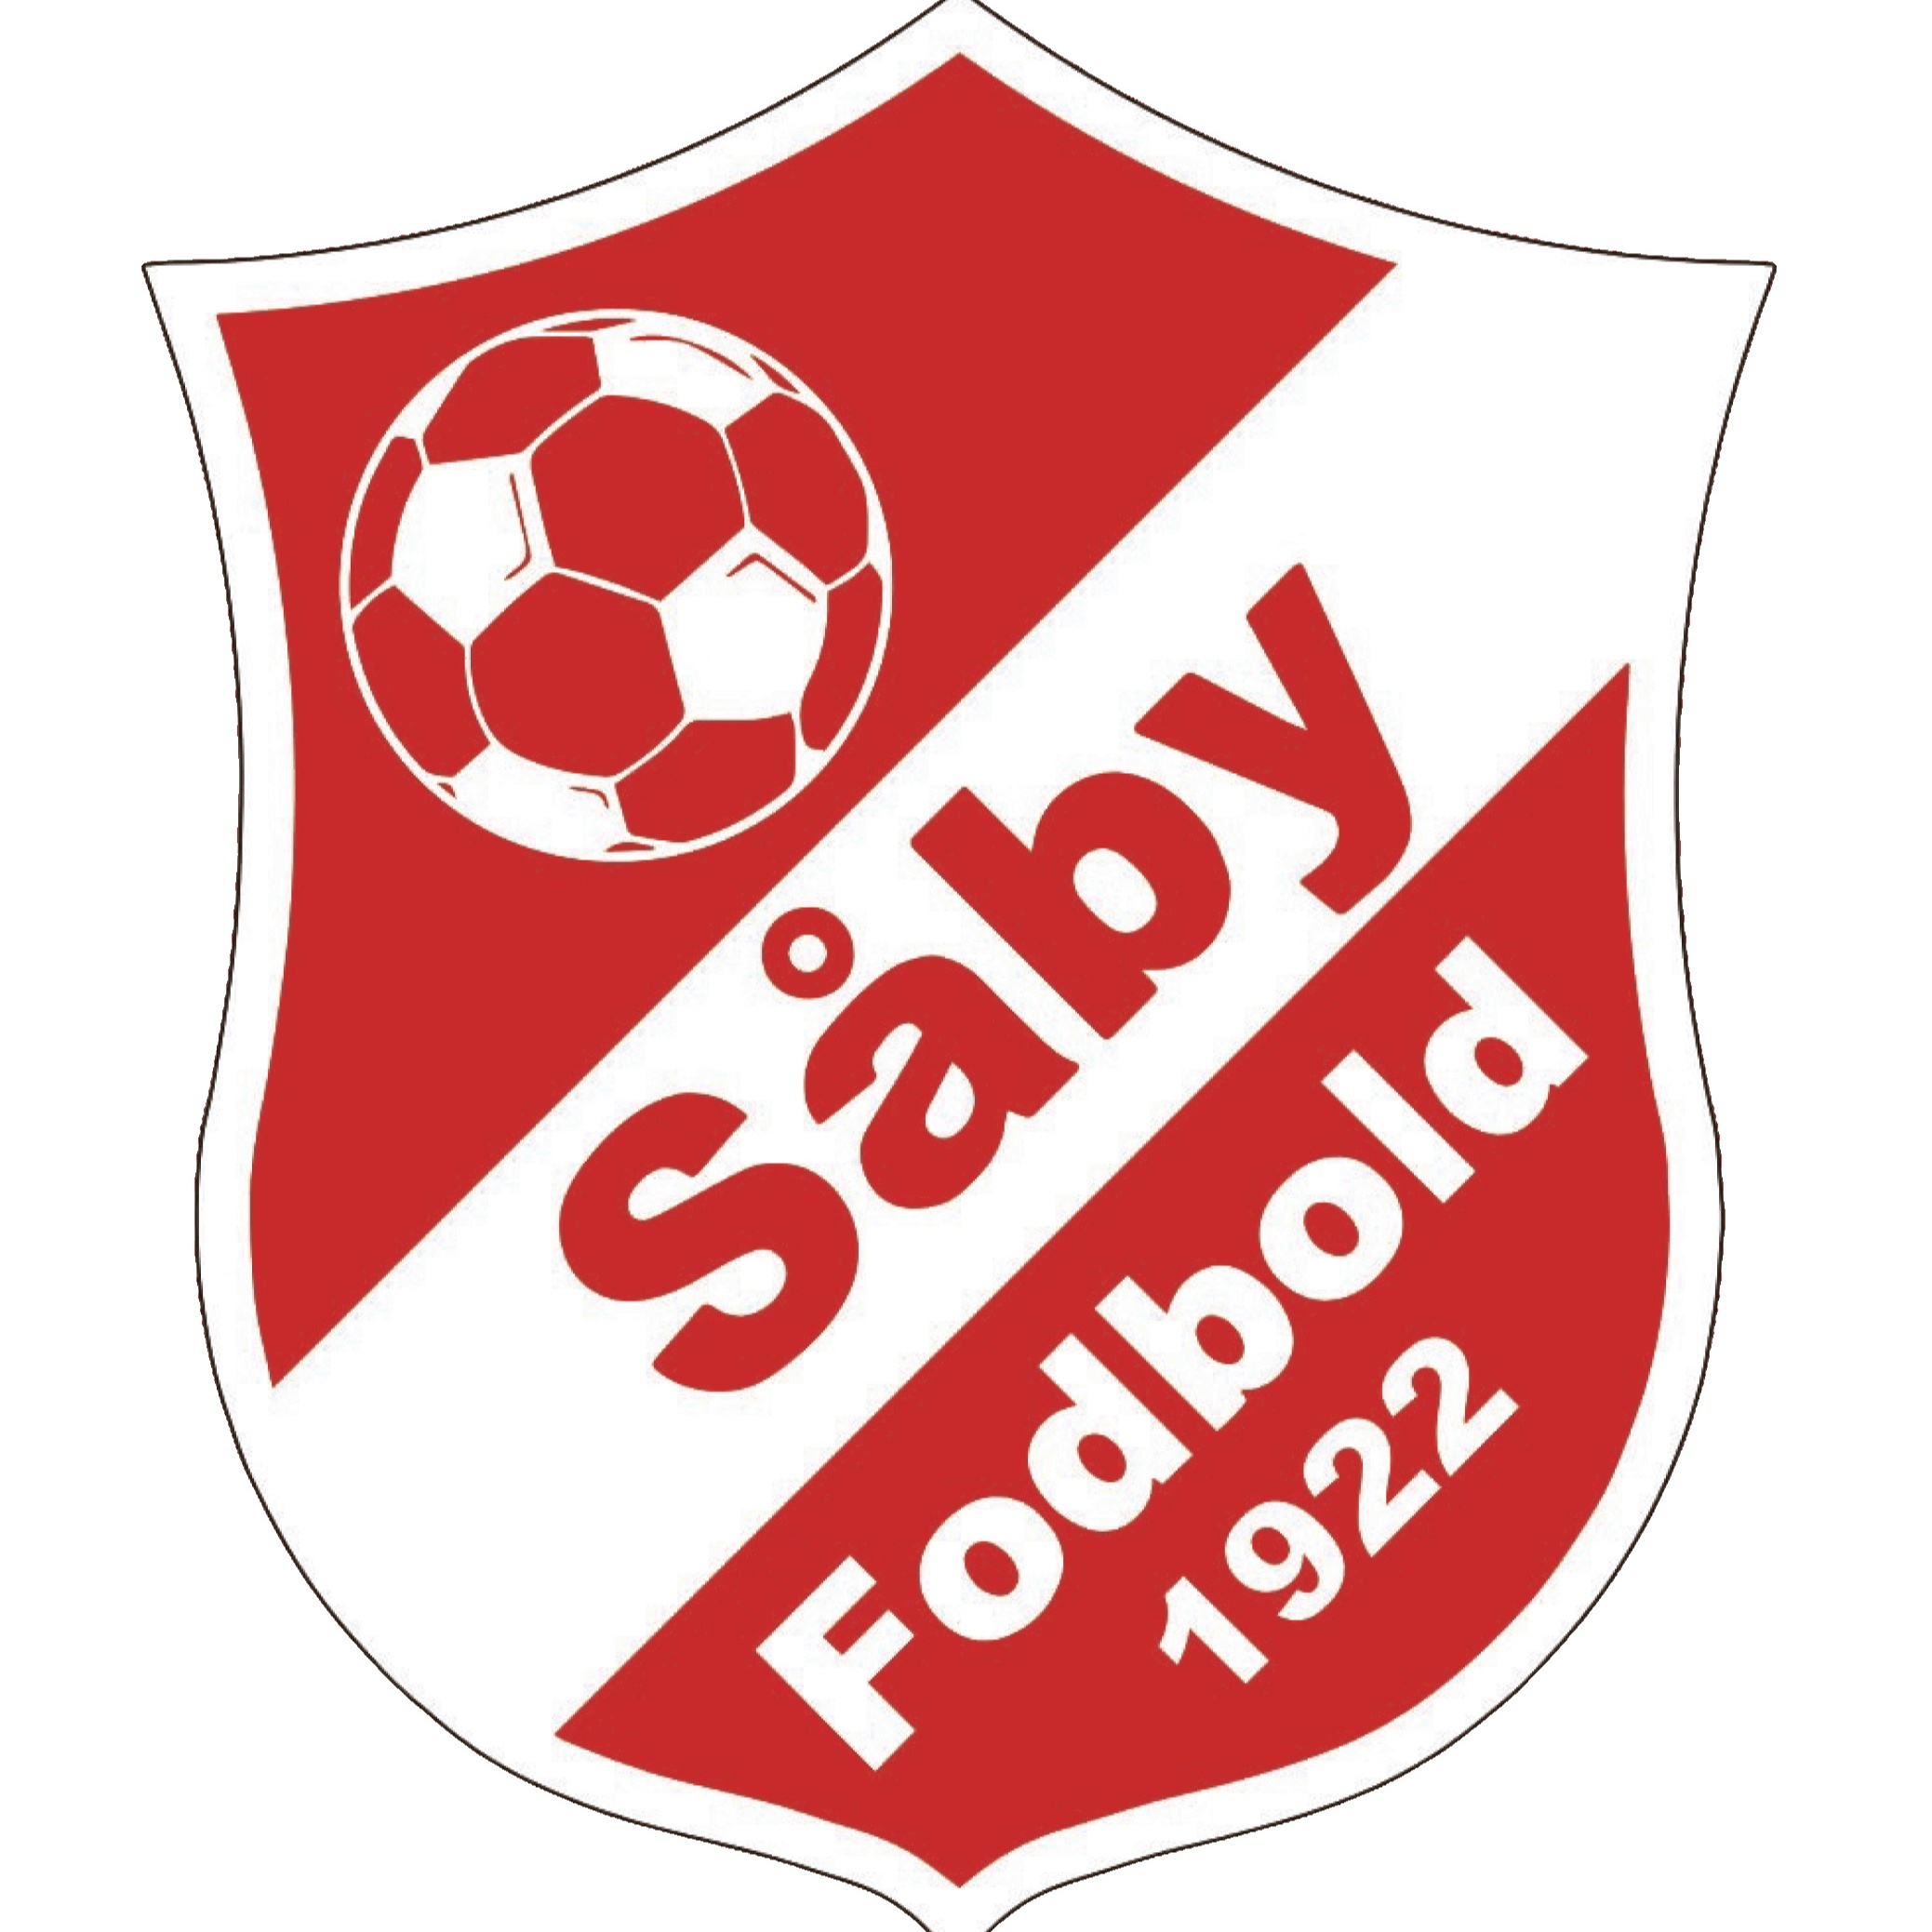 Escudo del Såby Fodbold